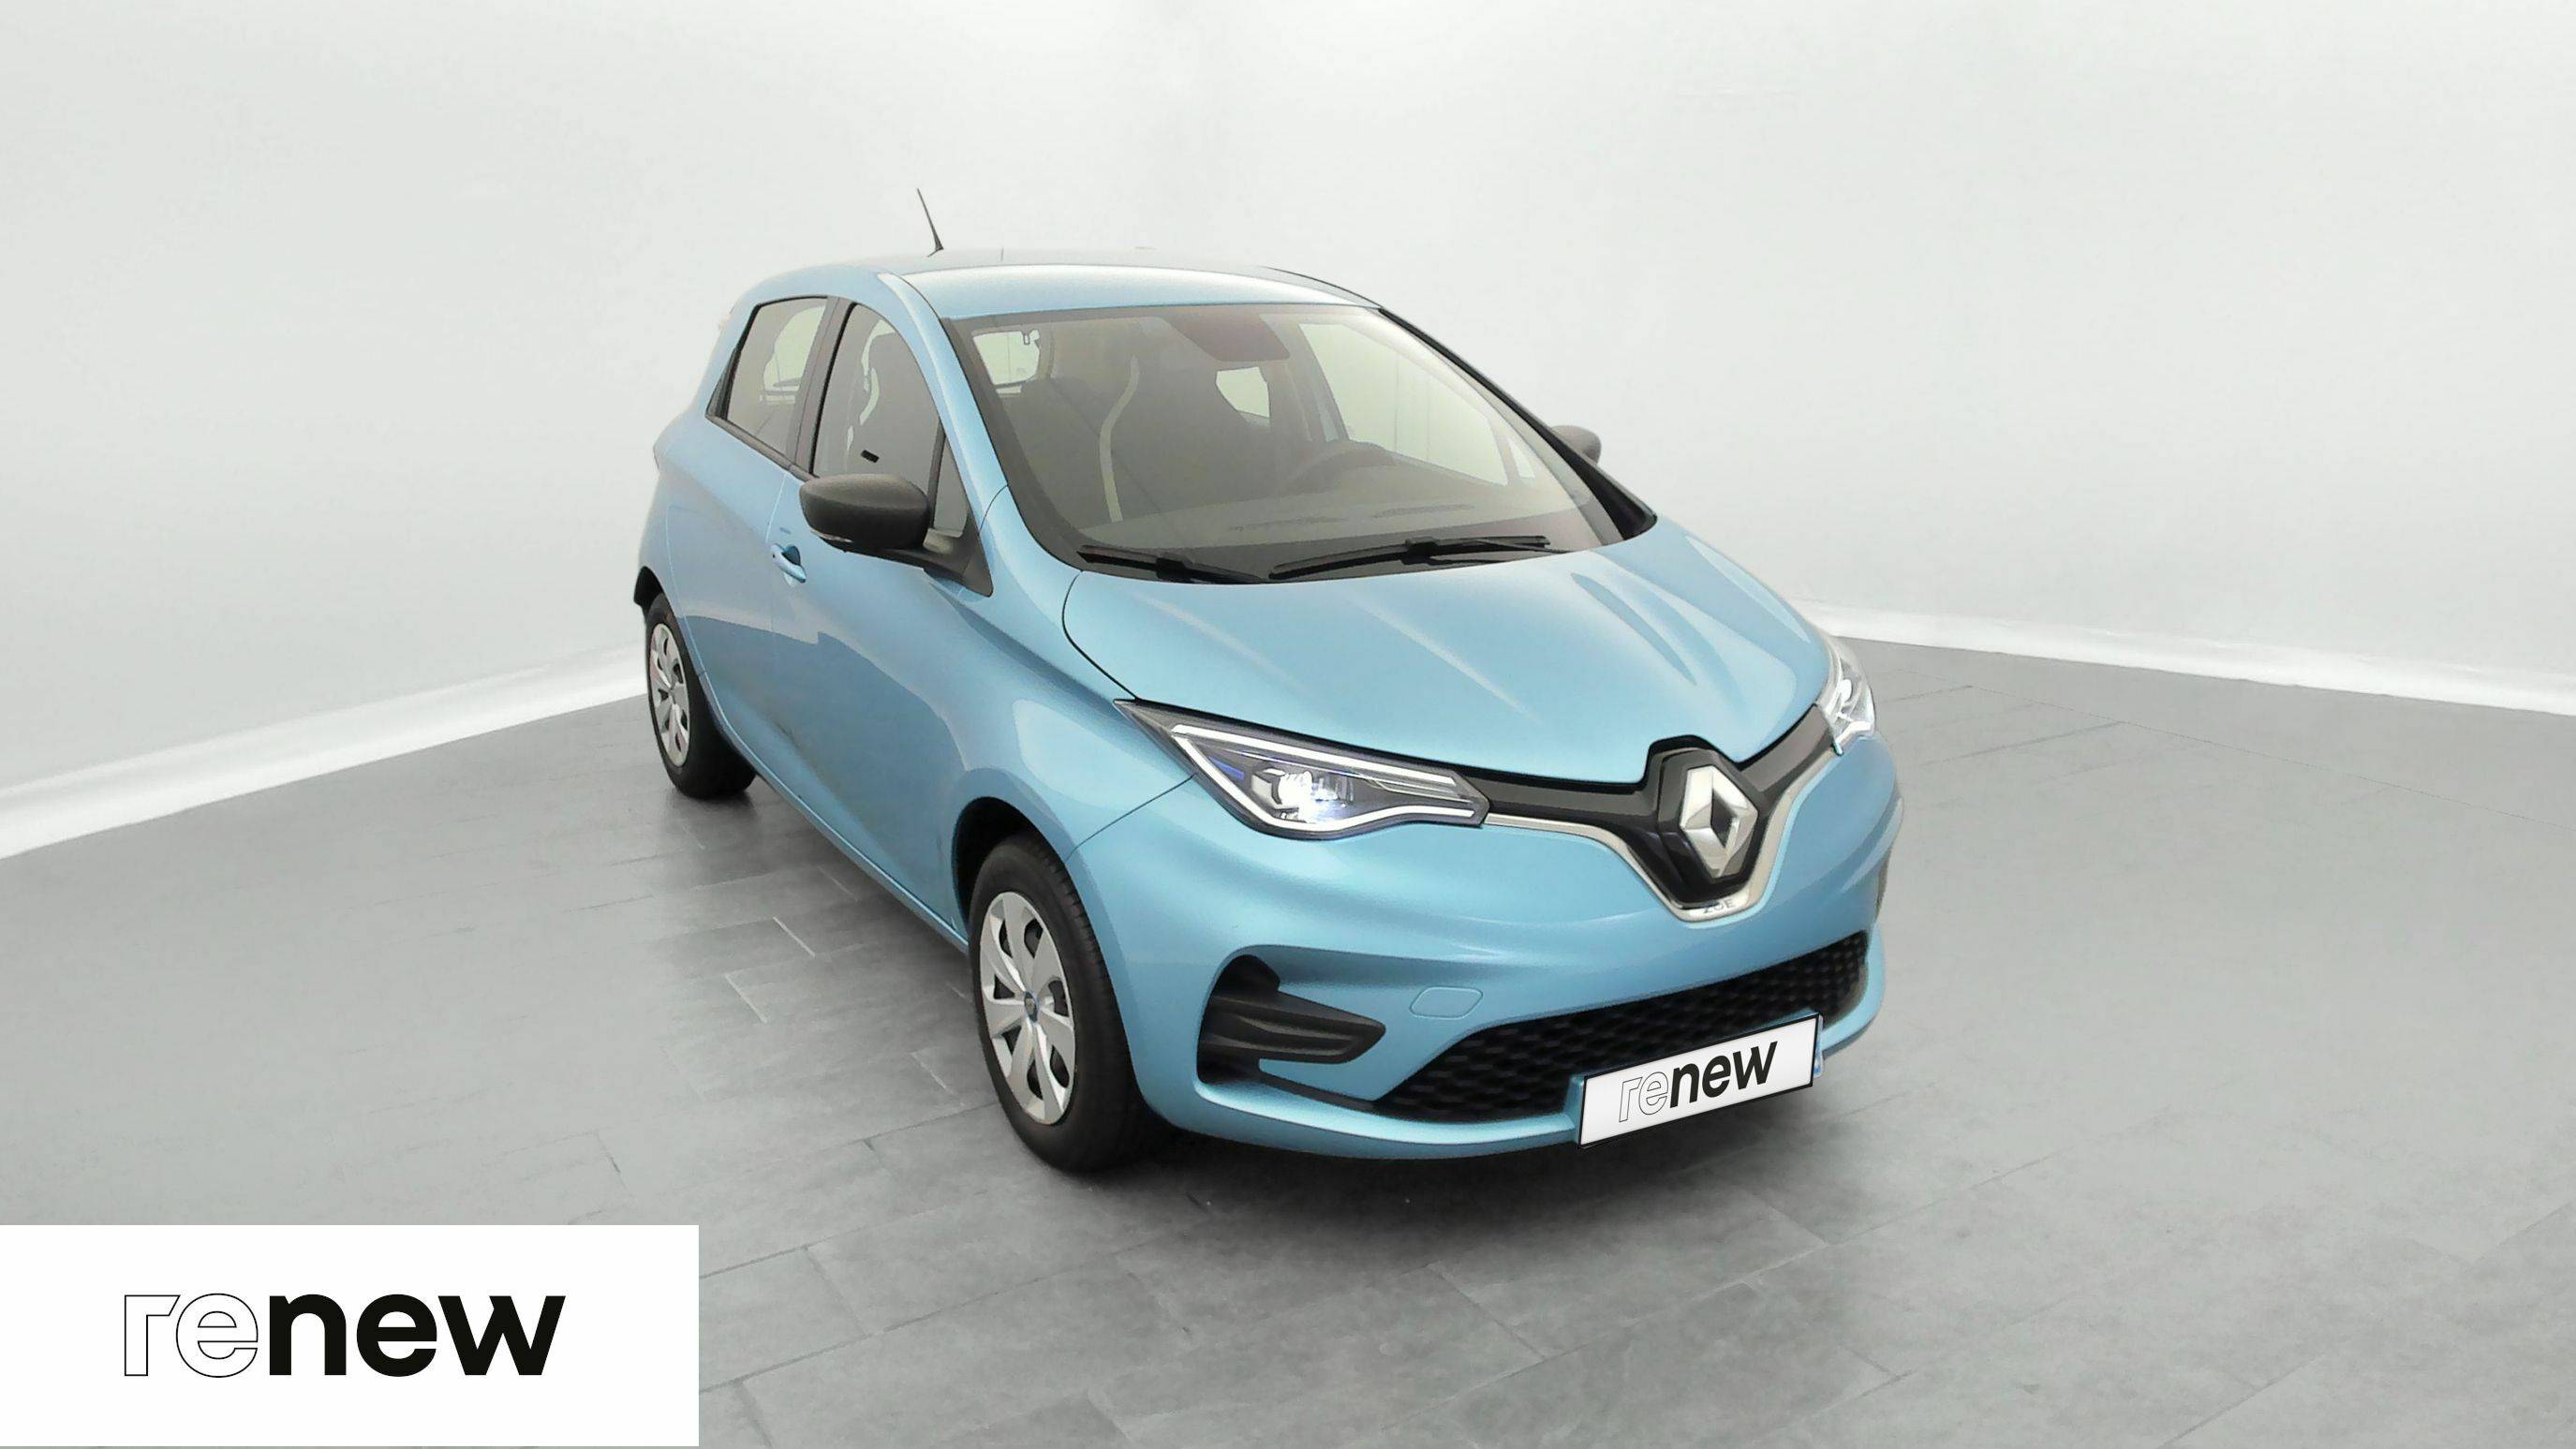 Renault zoe 2015 - BYmyCAR